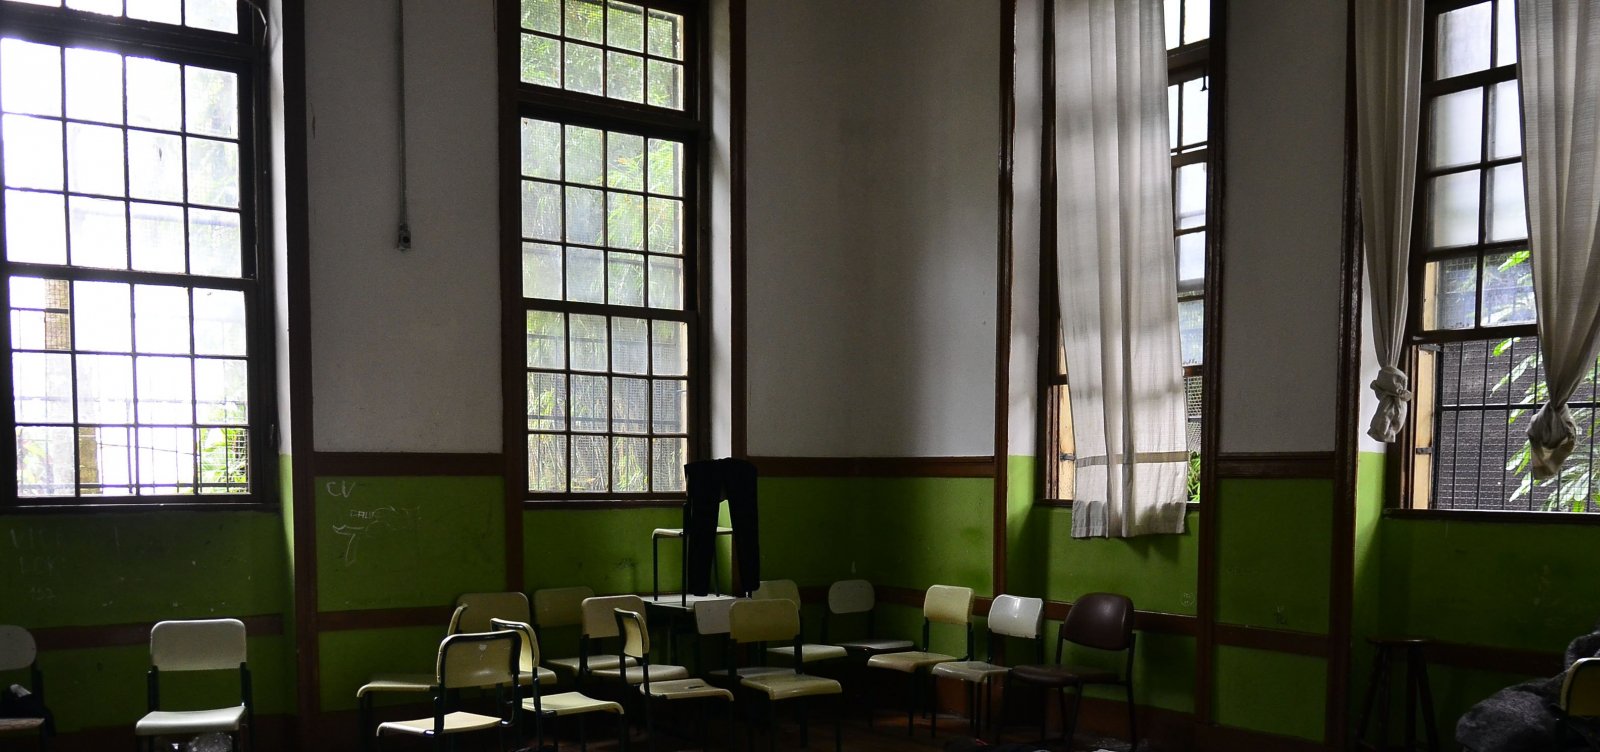 Violência escolar na Bahia coloca sala de aula em perigo